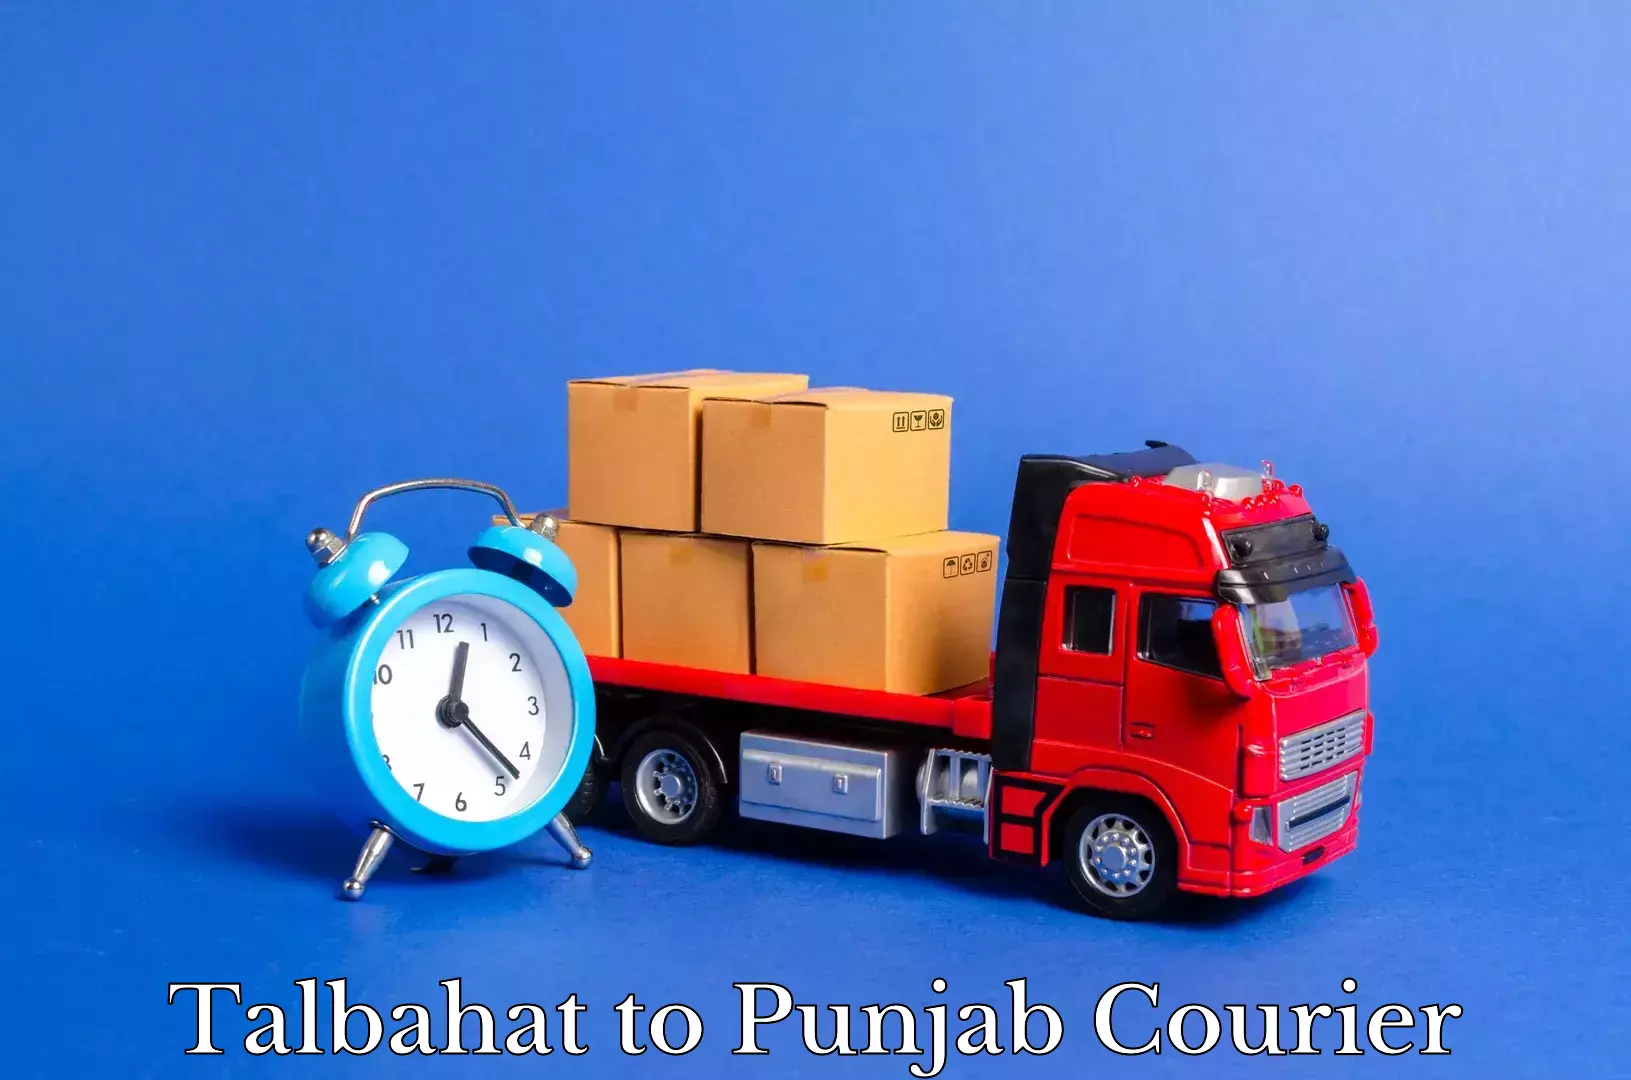 Furniture moving service Talbahat to Punjab